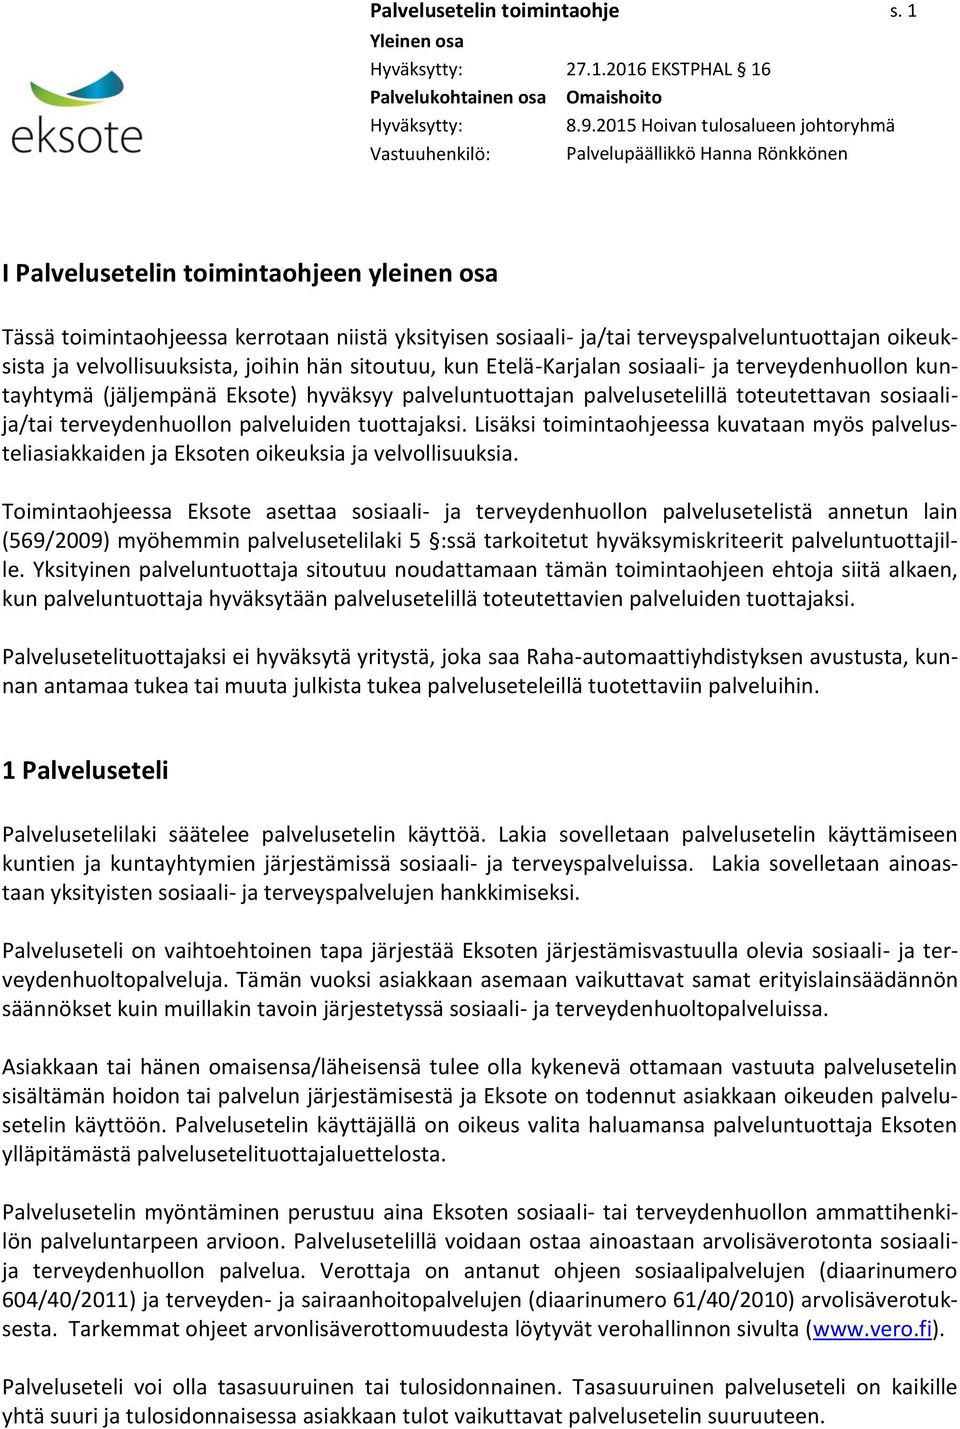 hän sitoutuu, kun Etelä-Karjalan sosiaali- ja terveydenhuollon kuntayhtymä (jäljempänä Eksote) hyväksyy palveluntuottajan palvelusetelillä toteutettavan sosiaalija/tai terveydenhuollon palveluiden